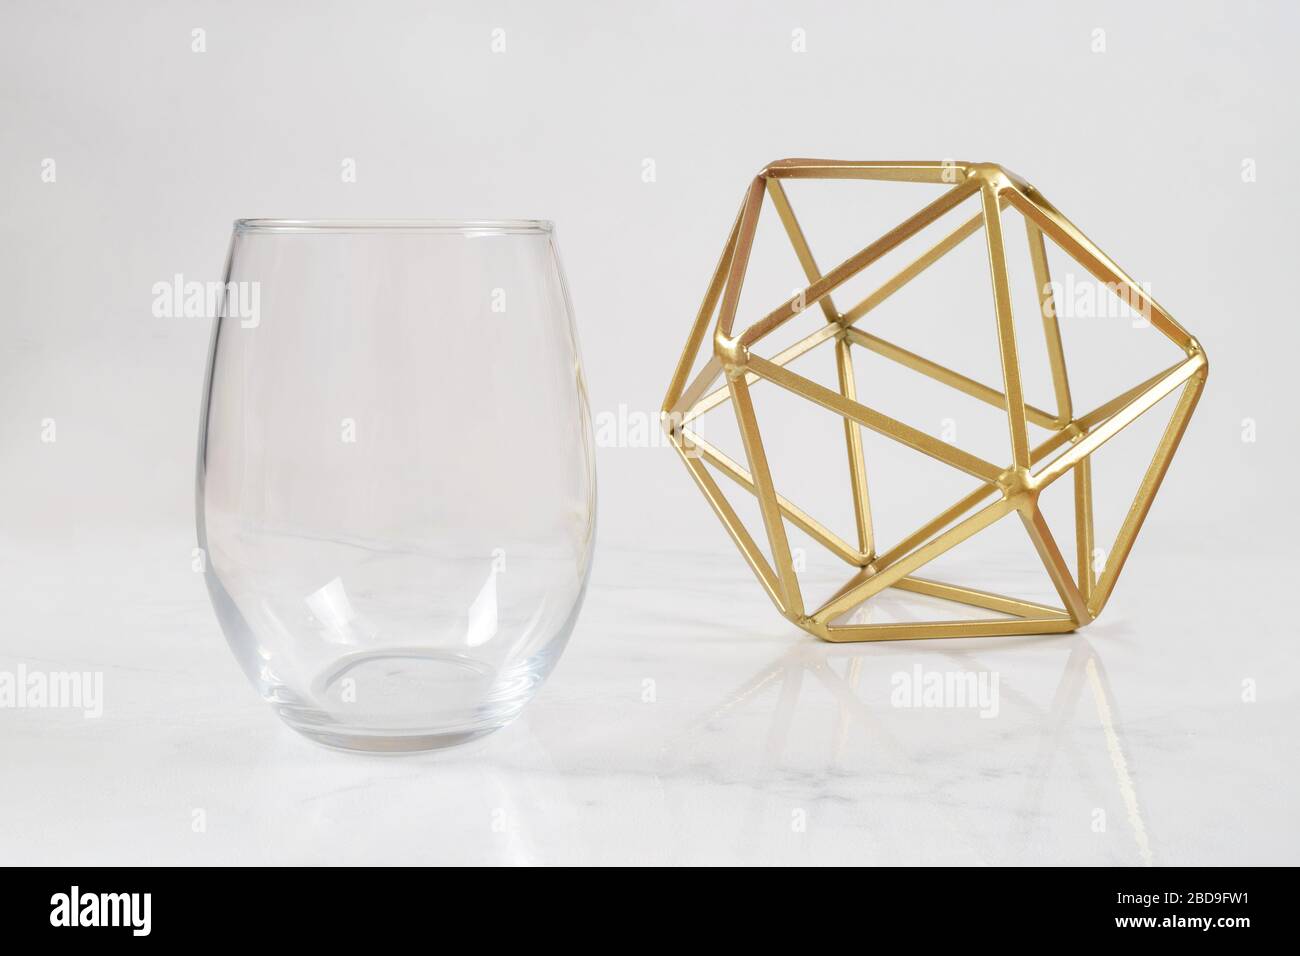 Ein luxuriöses, stielloses Weinglas schillt auf weißem Marmorhintergrund neben einer modernen Goldplastik. Viel Platz zum Kopieren, um Ihr eigenes Design hinzuzufügen Stockfoto